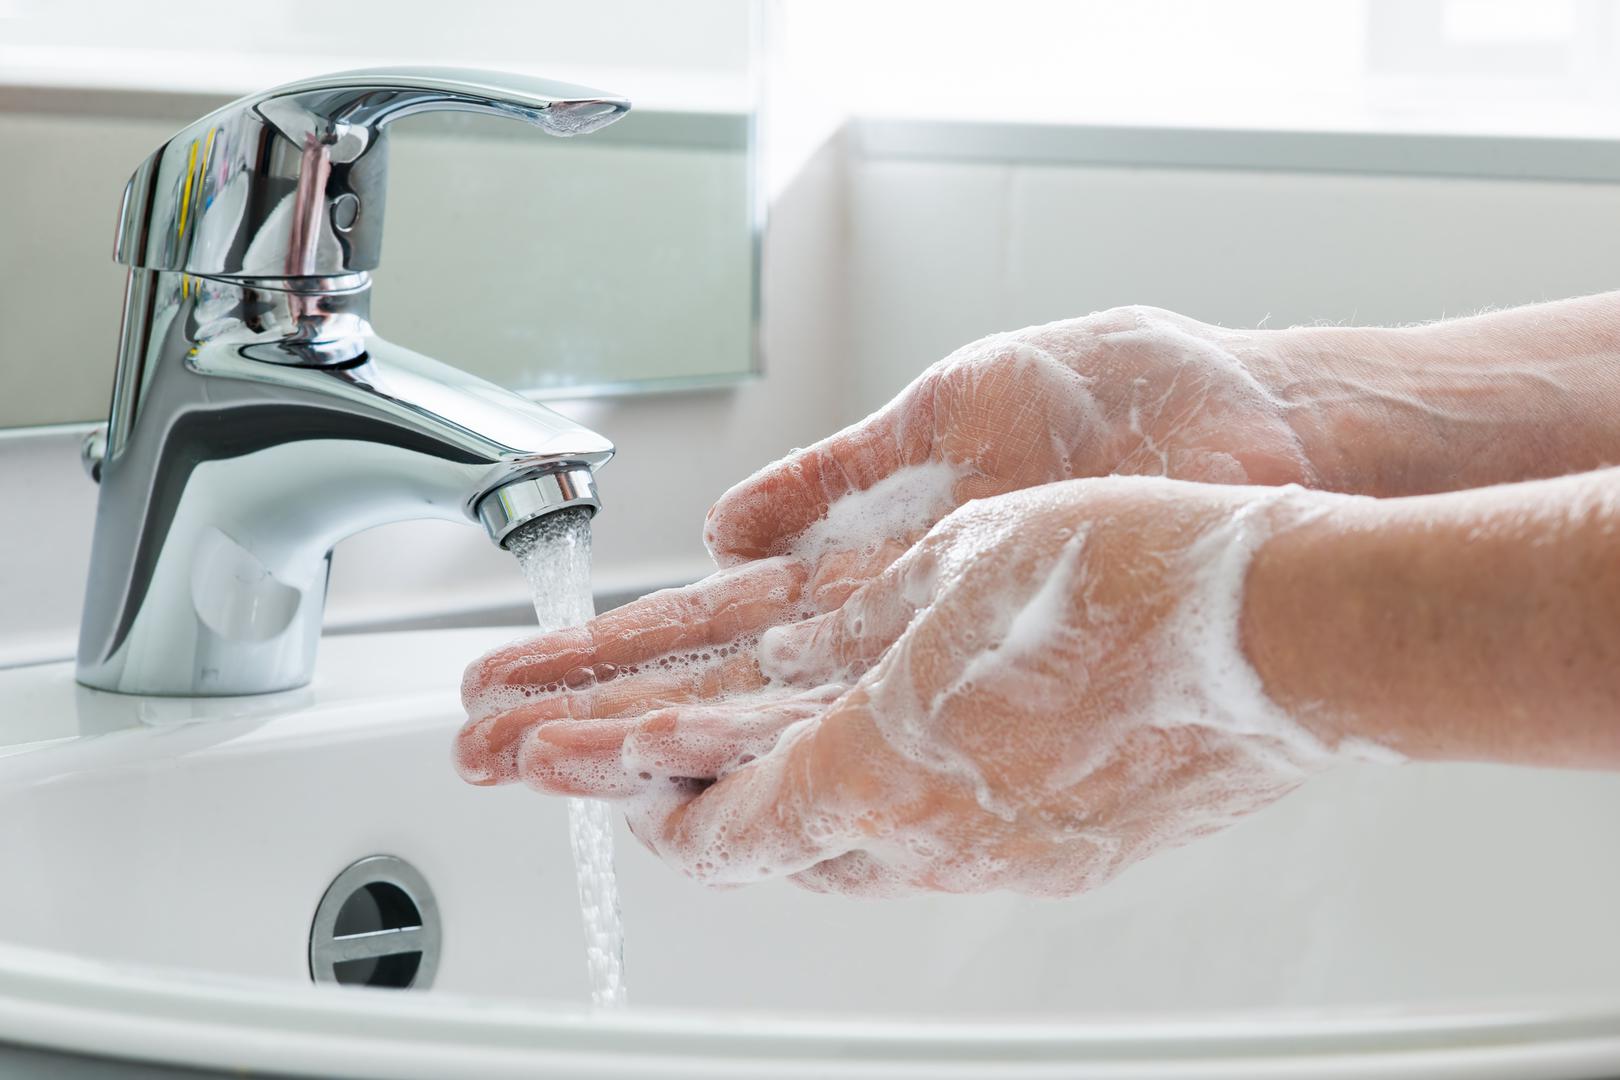 Pranje ruku nakon obavljanja nužde jedna je od najvažnijih higijenskih navika, ali ako to radite površno, kao da ih niste ni oprali. 